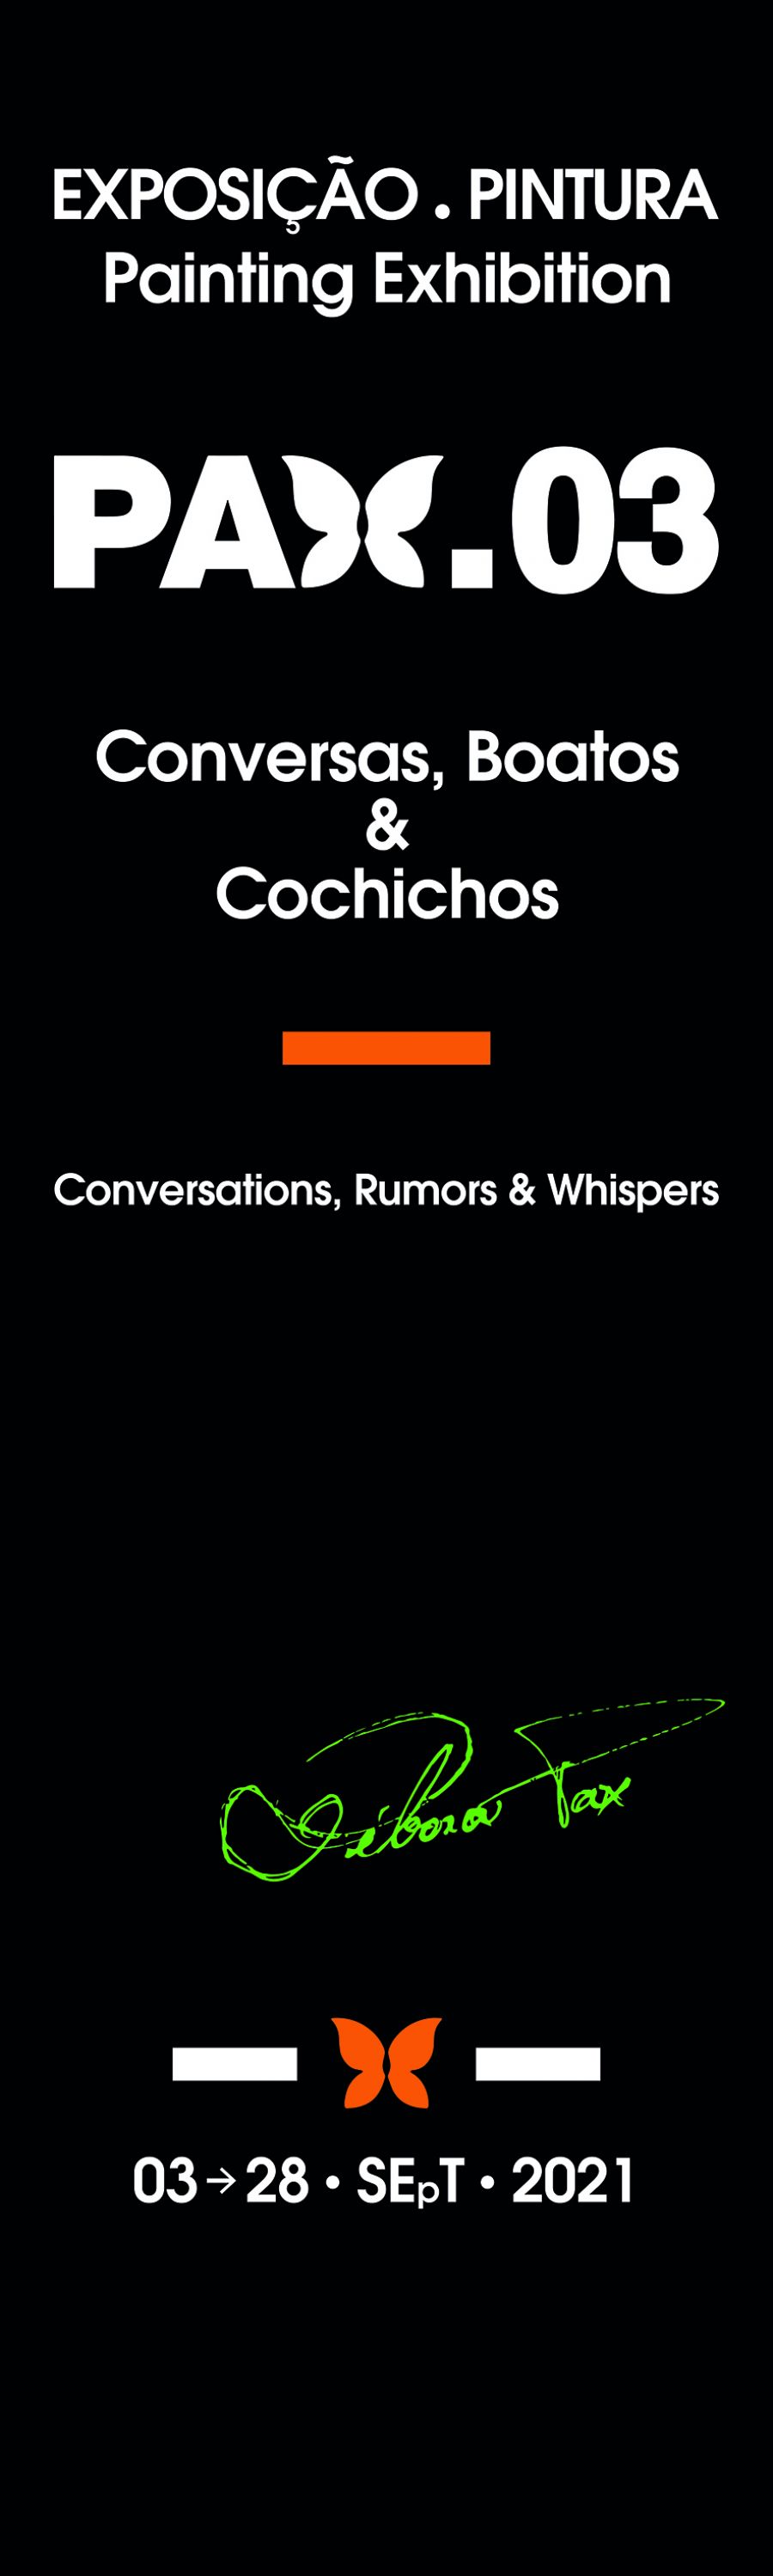 Conversas, Boatos & Cochichos